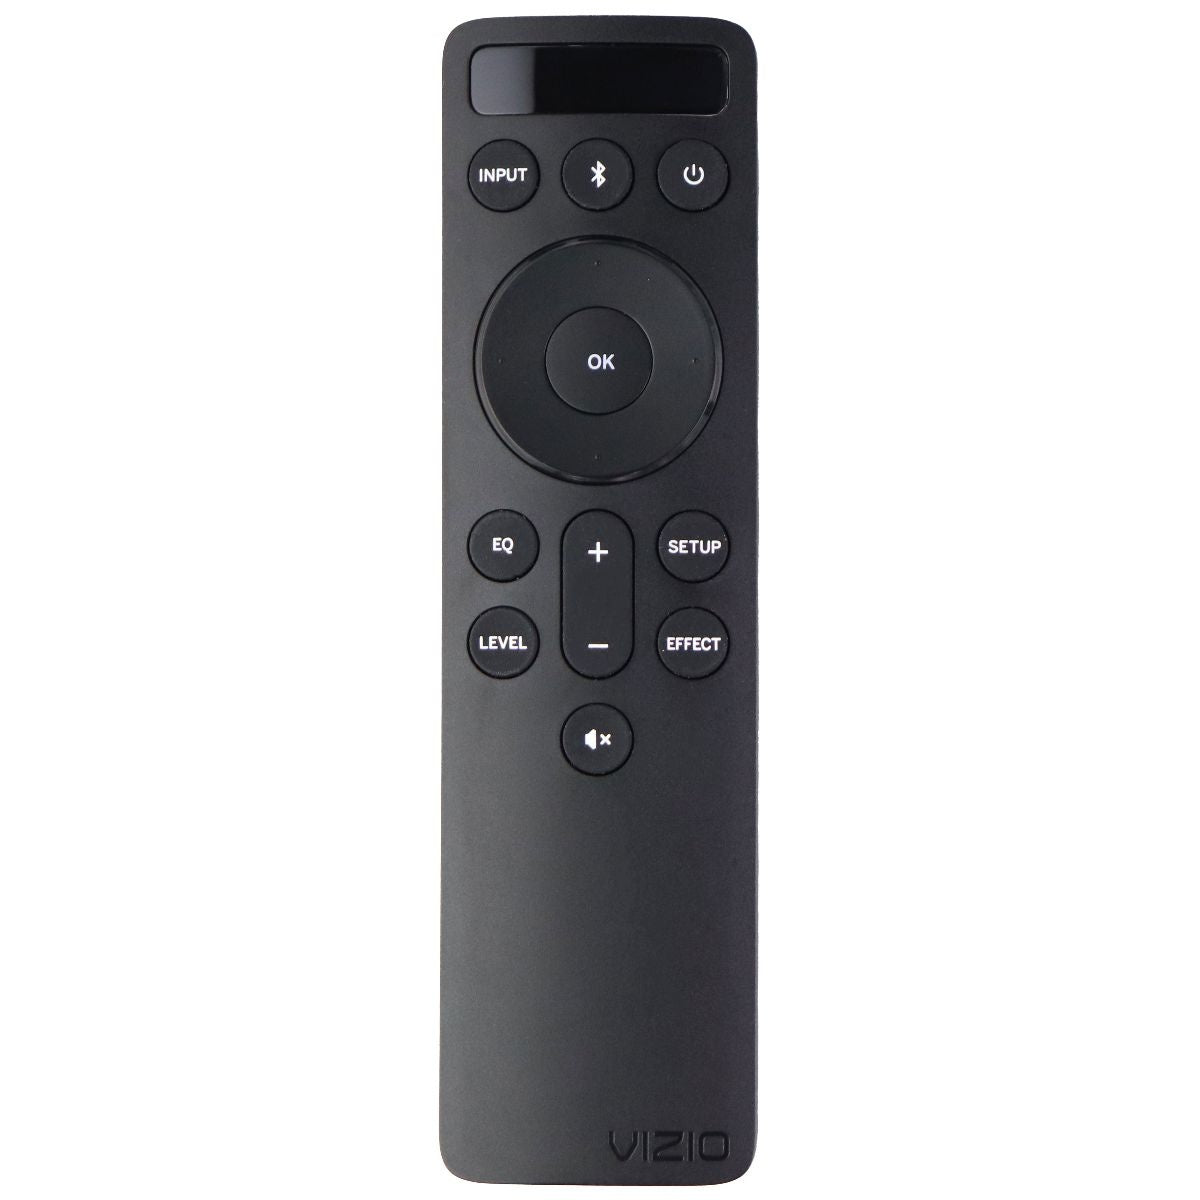 Vizio Remote (D51) with Backlit Screen for Select Vizio Soundbars - Black TV, Video & Audio Accessories - Remote Controls Vizio    - Simple Cell Bulk Wholesale Pricing - USA Seller